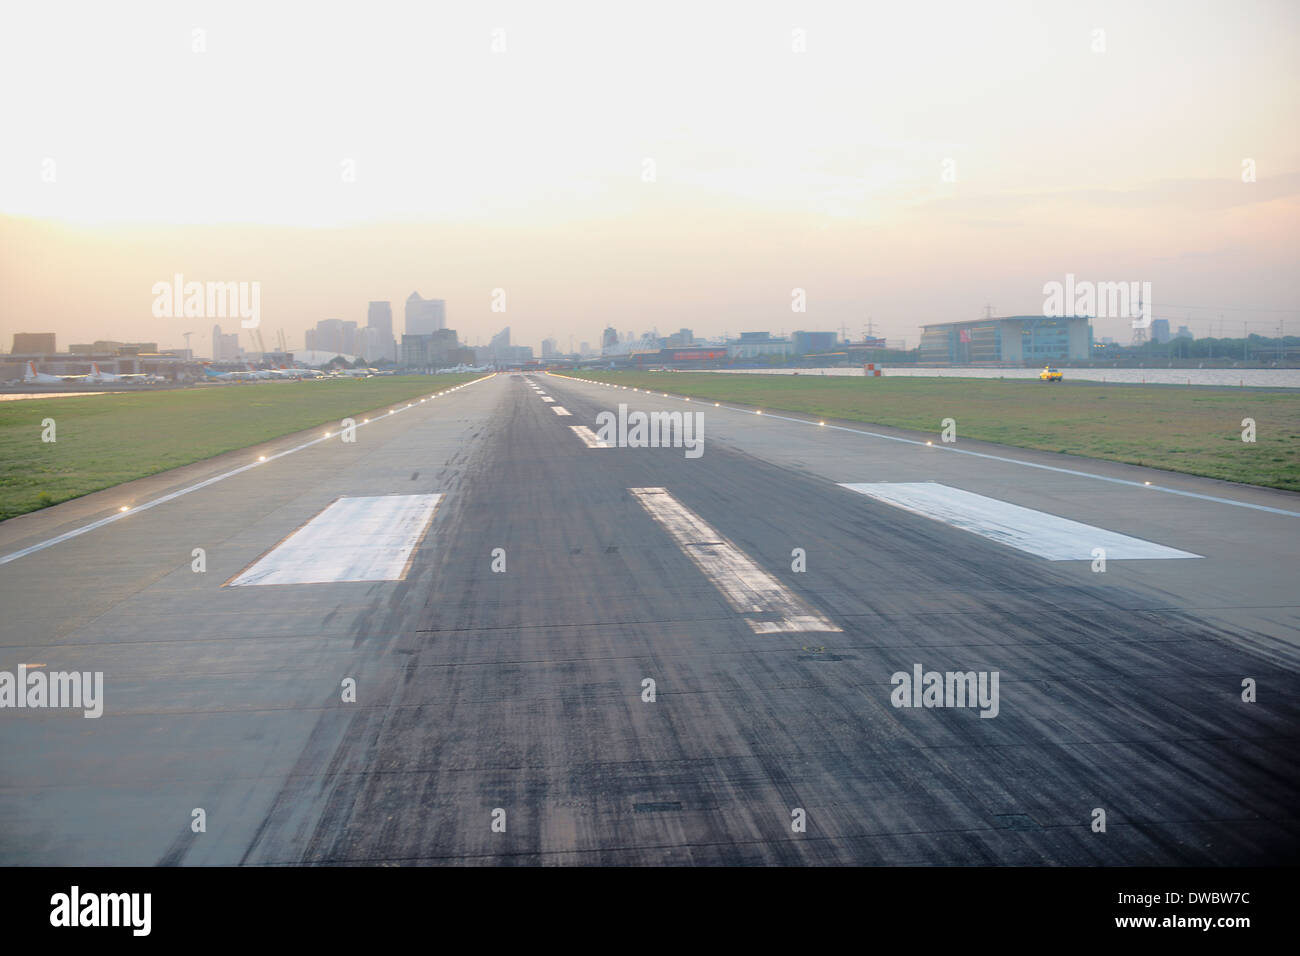 Erhöhten Blick auf die Landebahn des Flughafens, London, UK Stockfoto